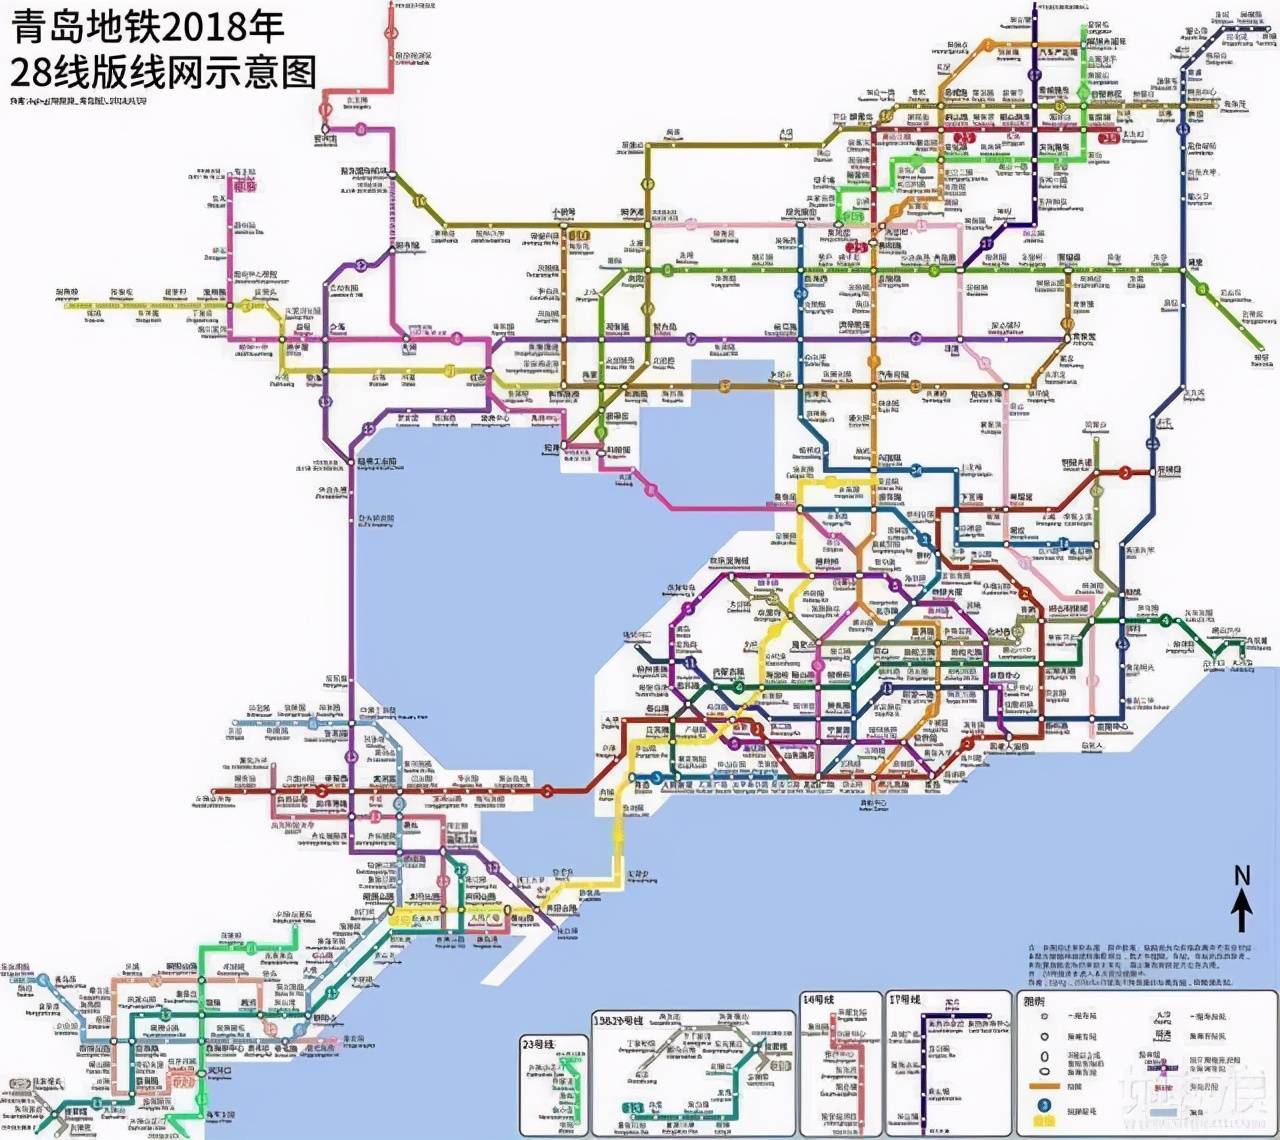 现在青岛市已经在运行的地铁线路有6条(含部分线路分区段运营).